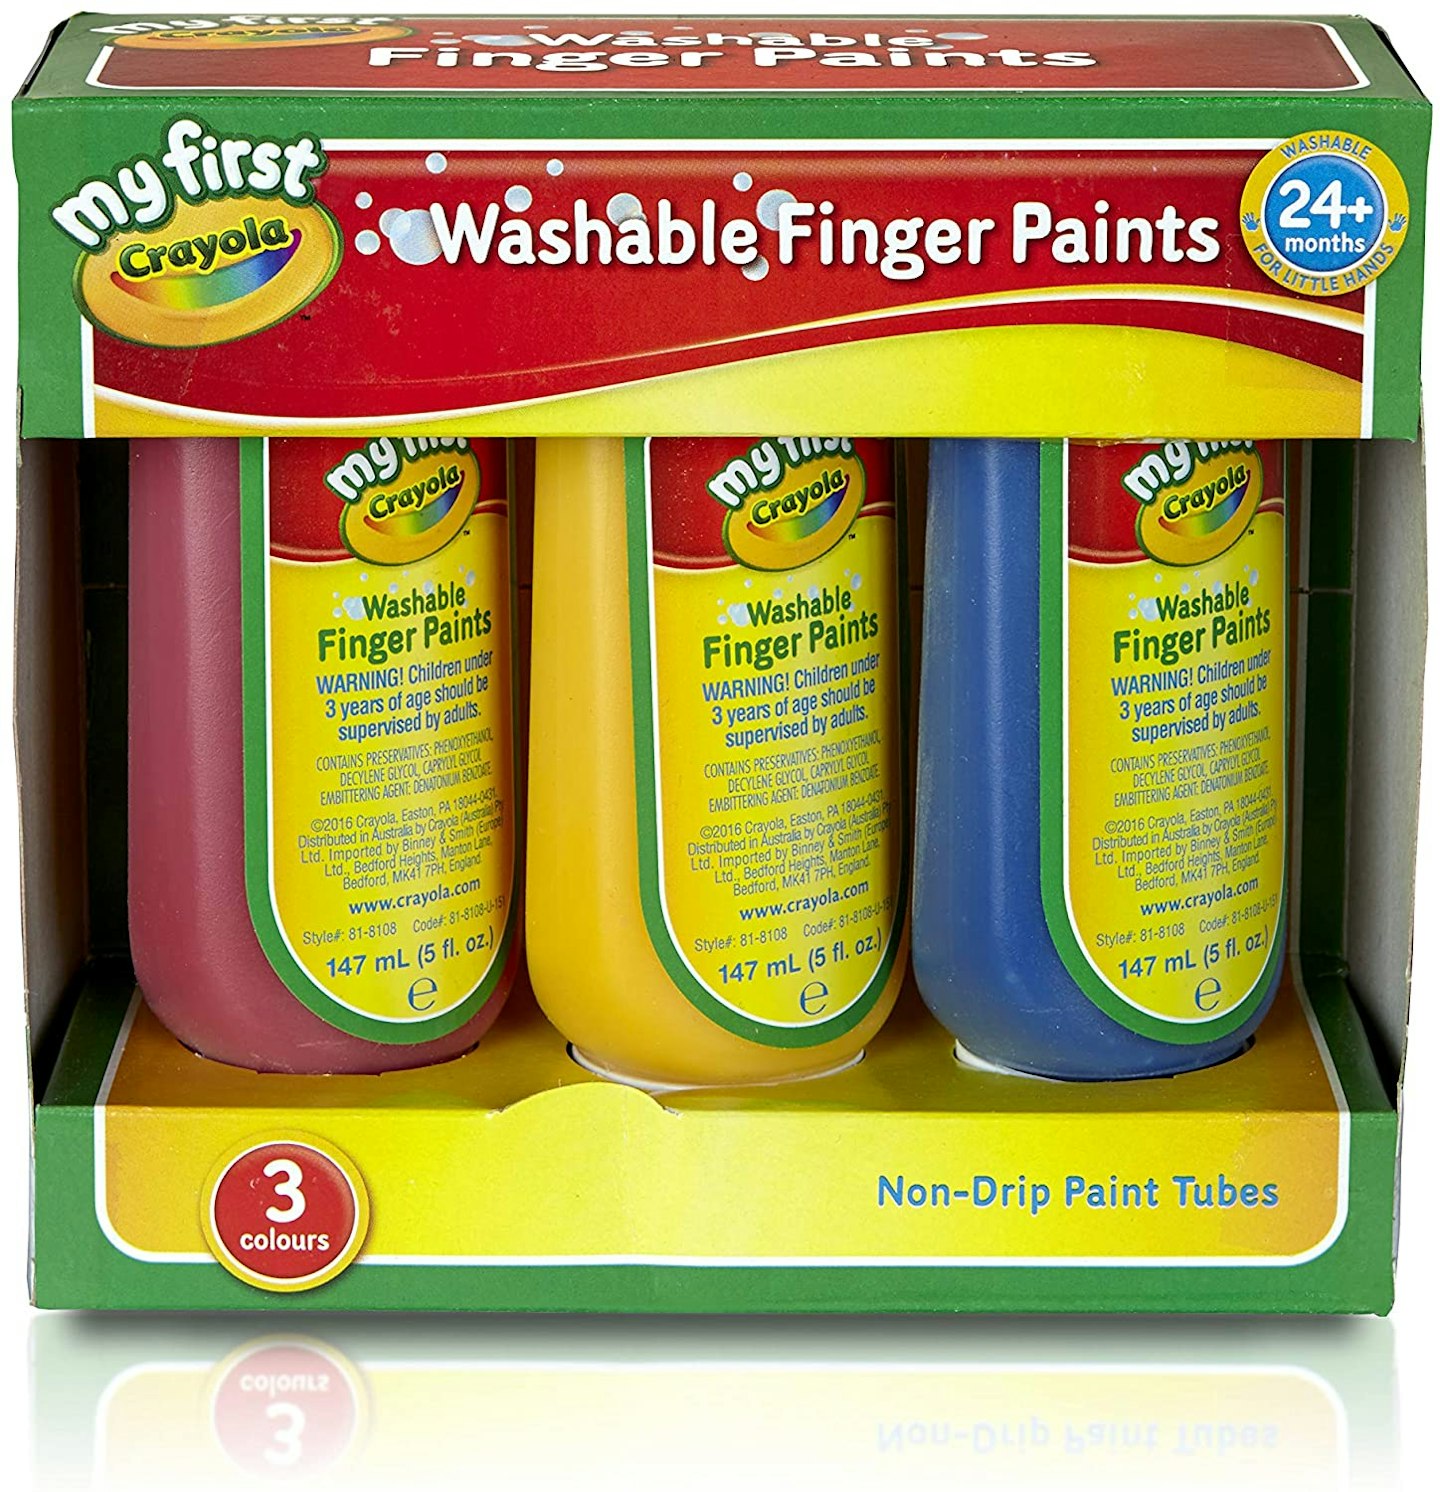 Crayola Washable Finger Paints (6 Count) Toddler Paint Supplies, Kids Paint Set